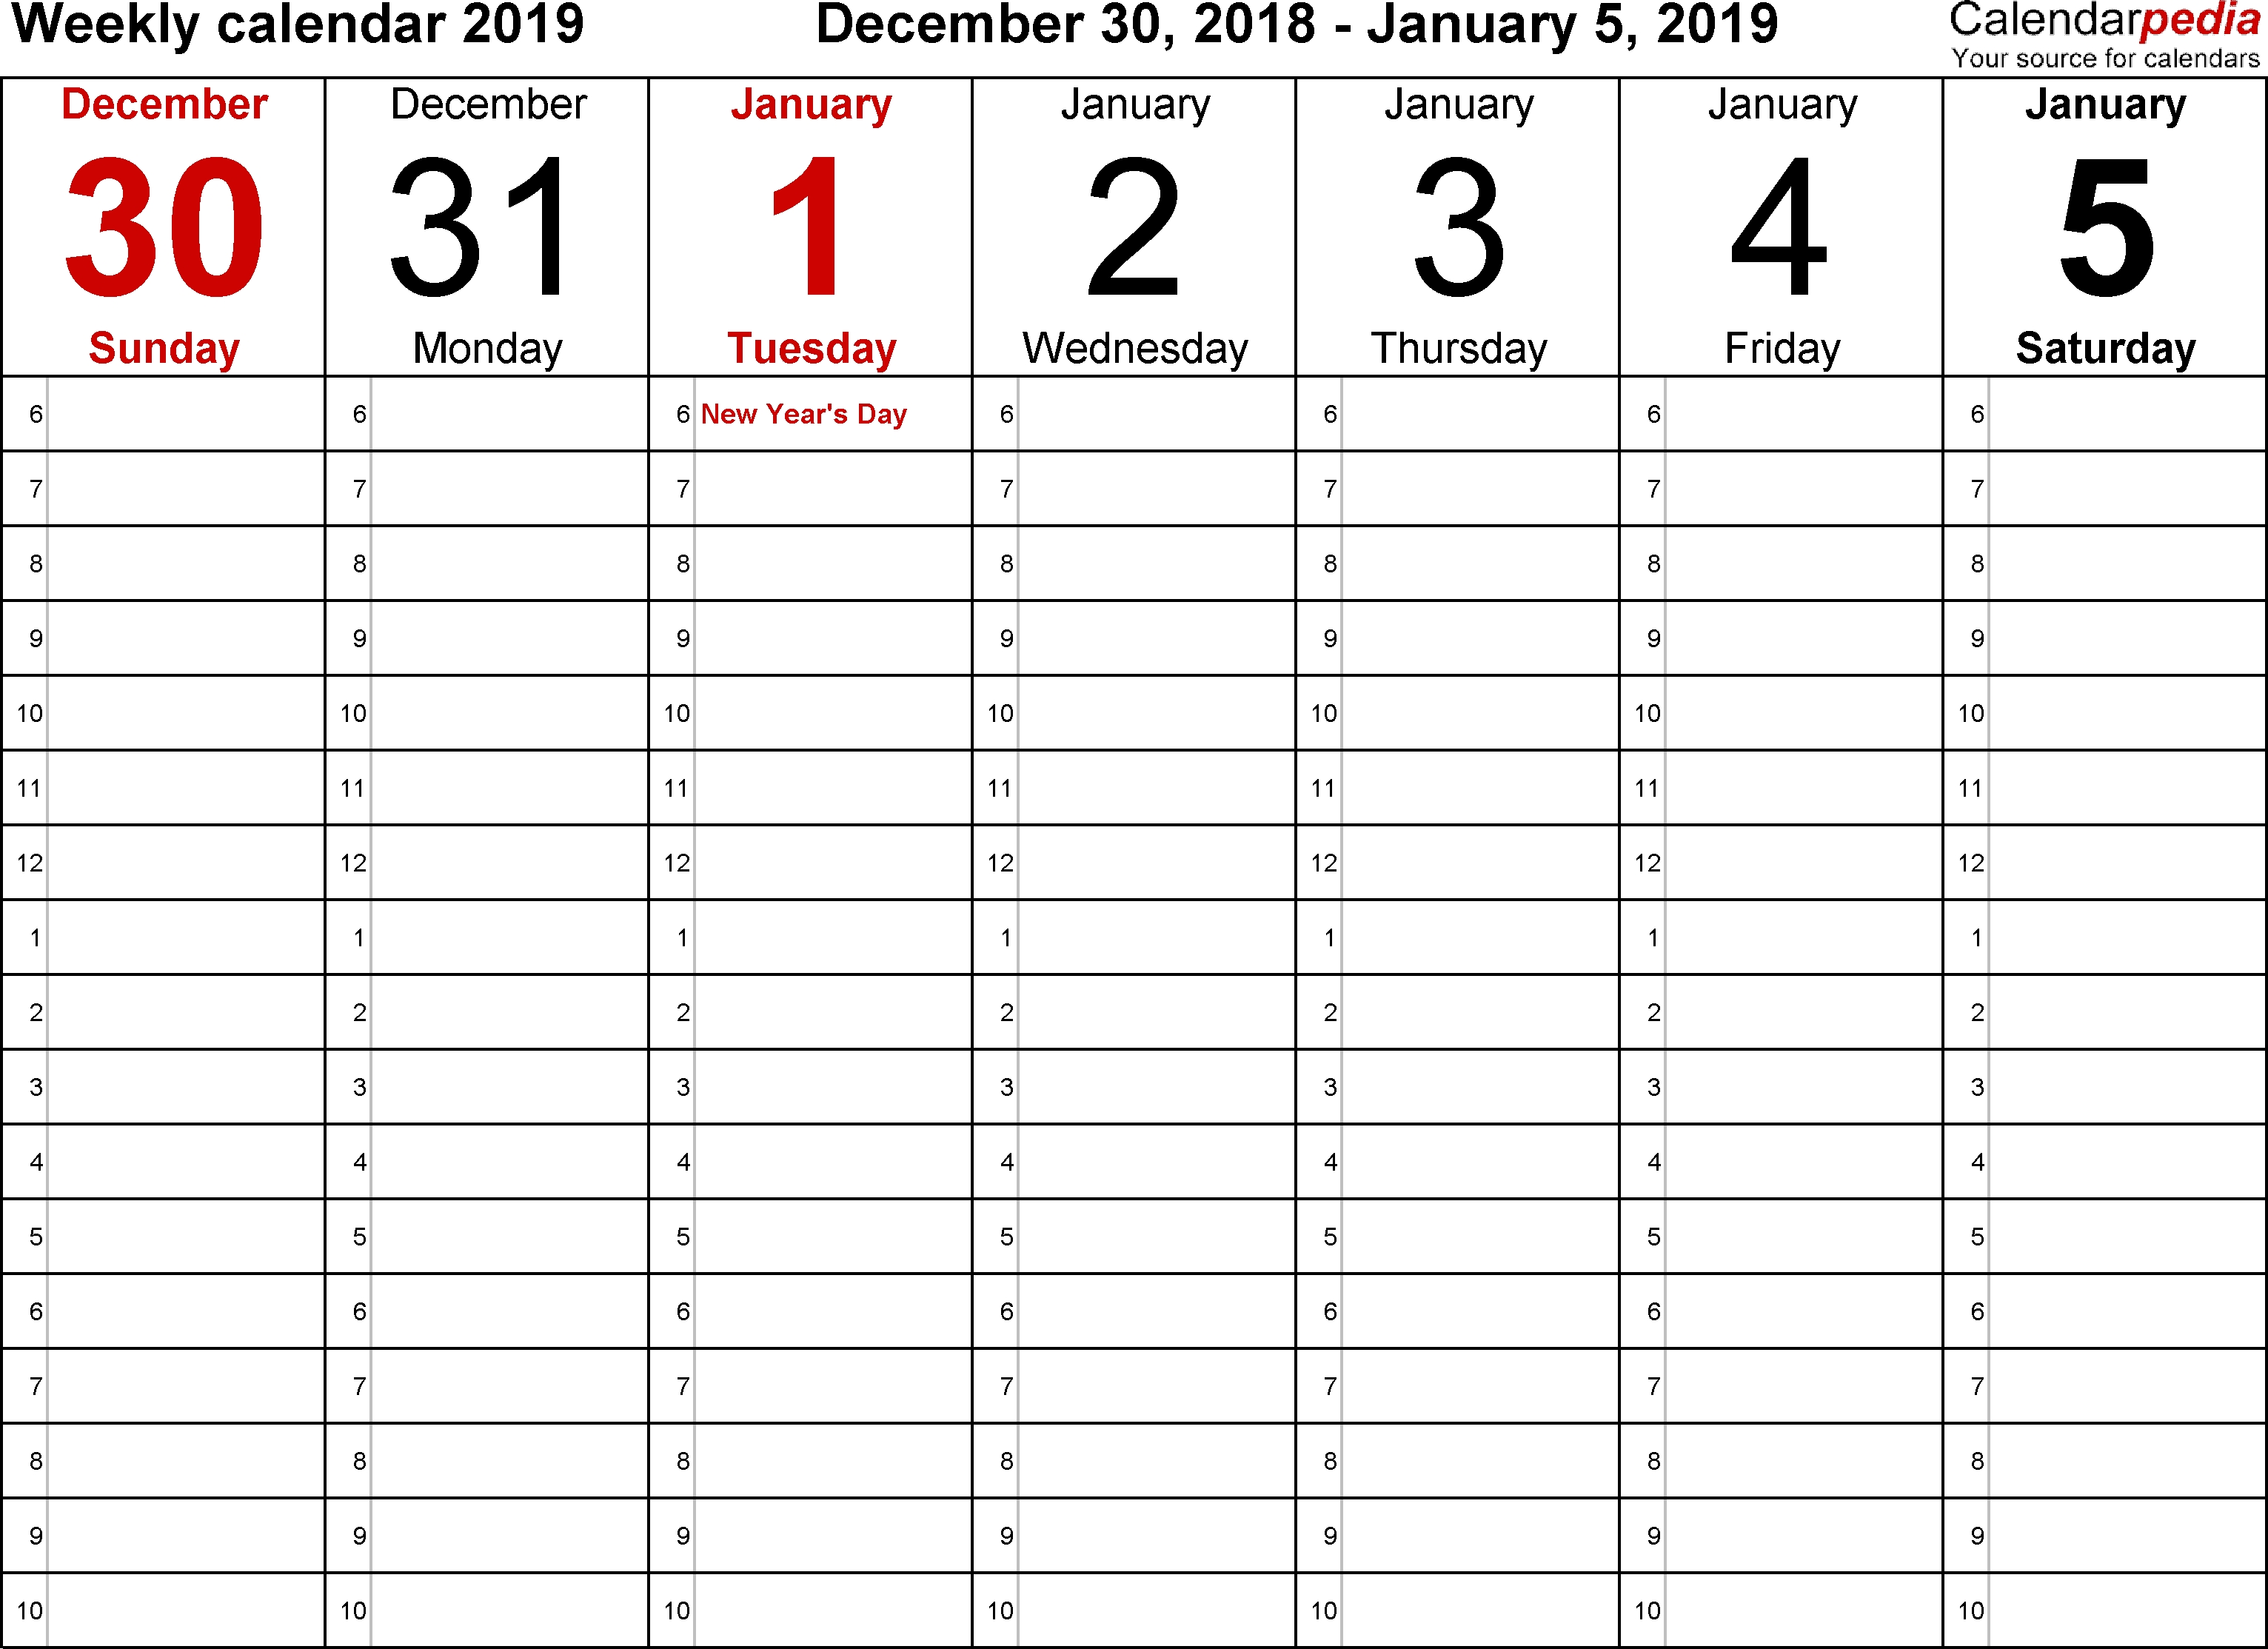 Weekly Calendar 2019 For Word - 12 Free Printable Templates Week Of Calendar Template